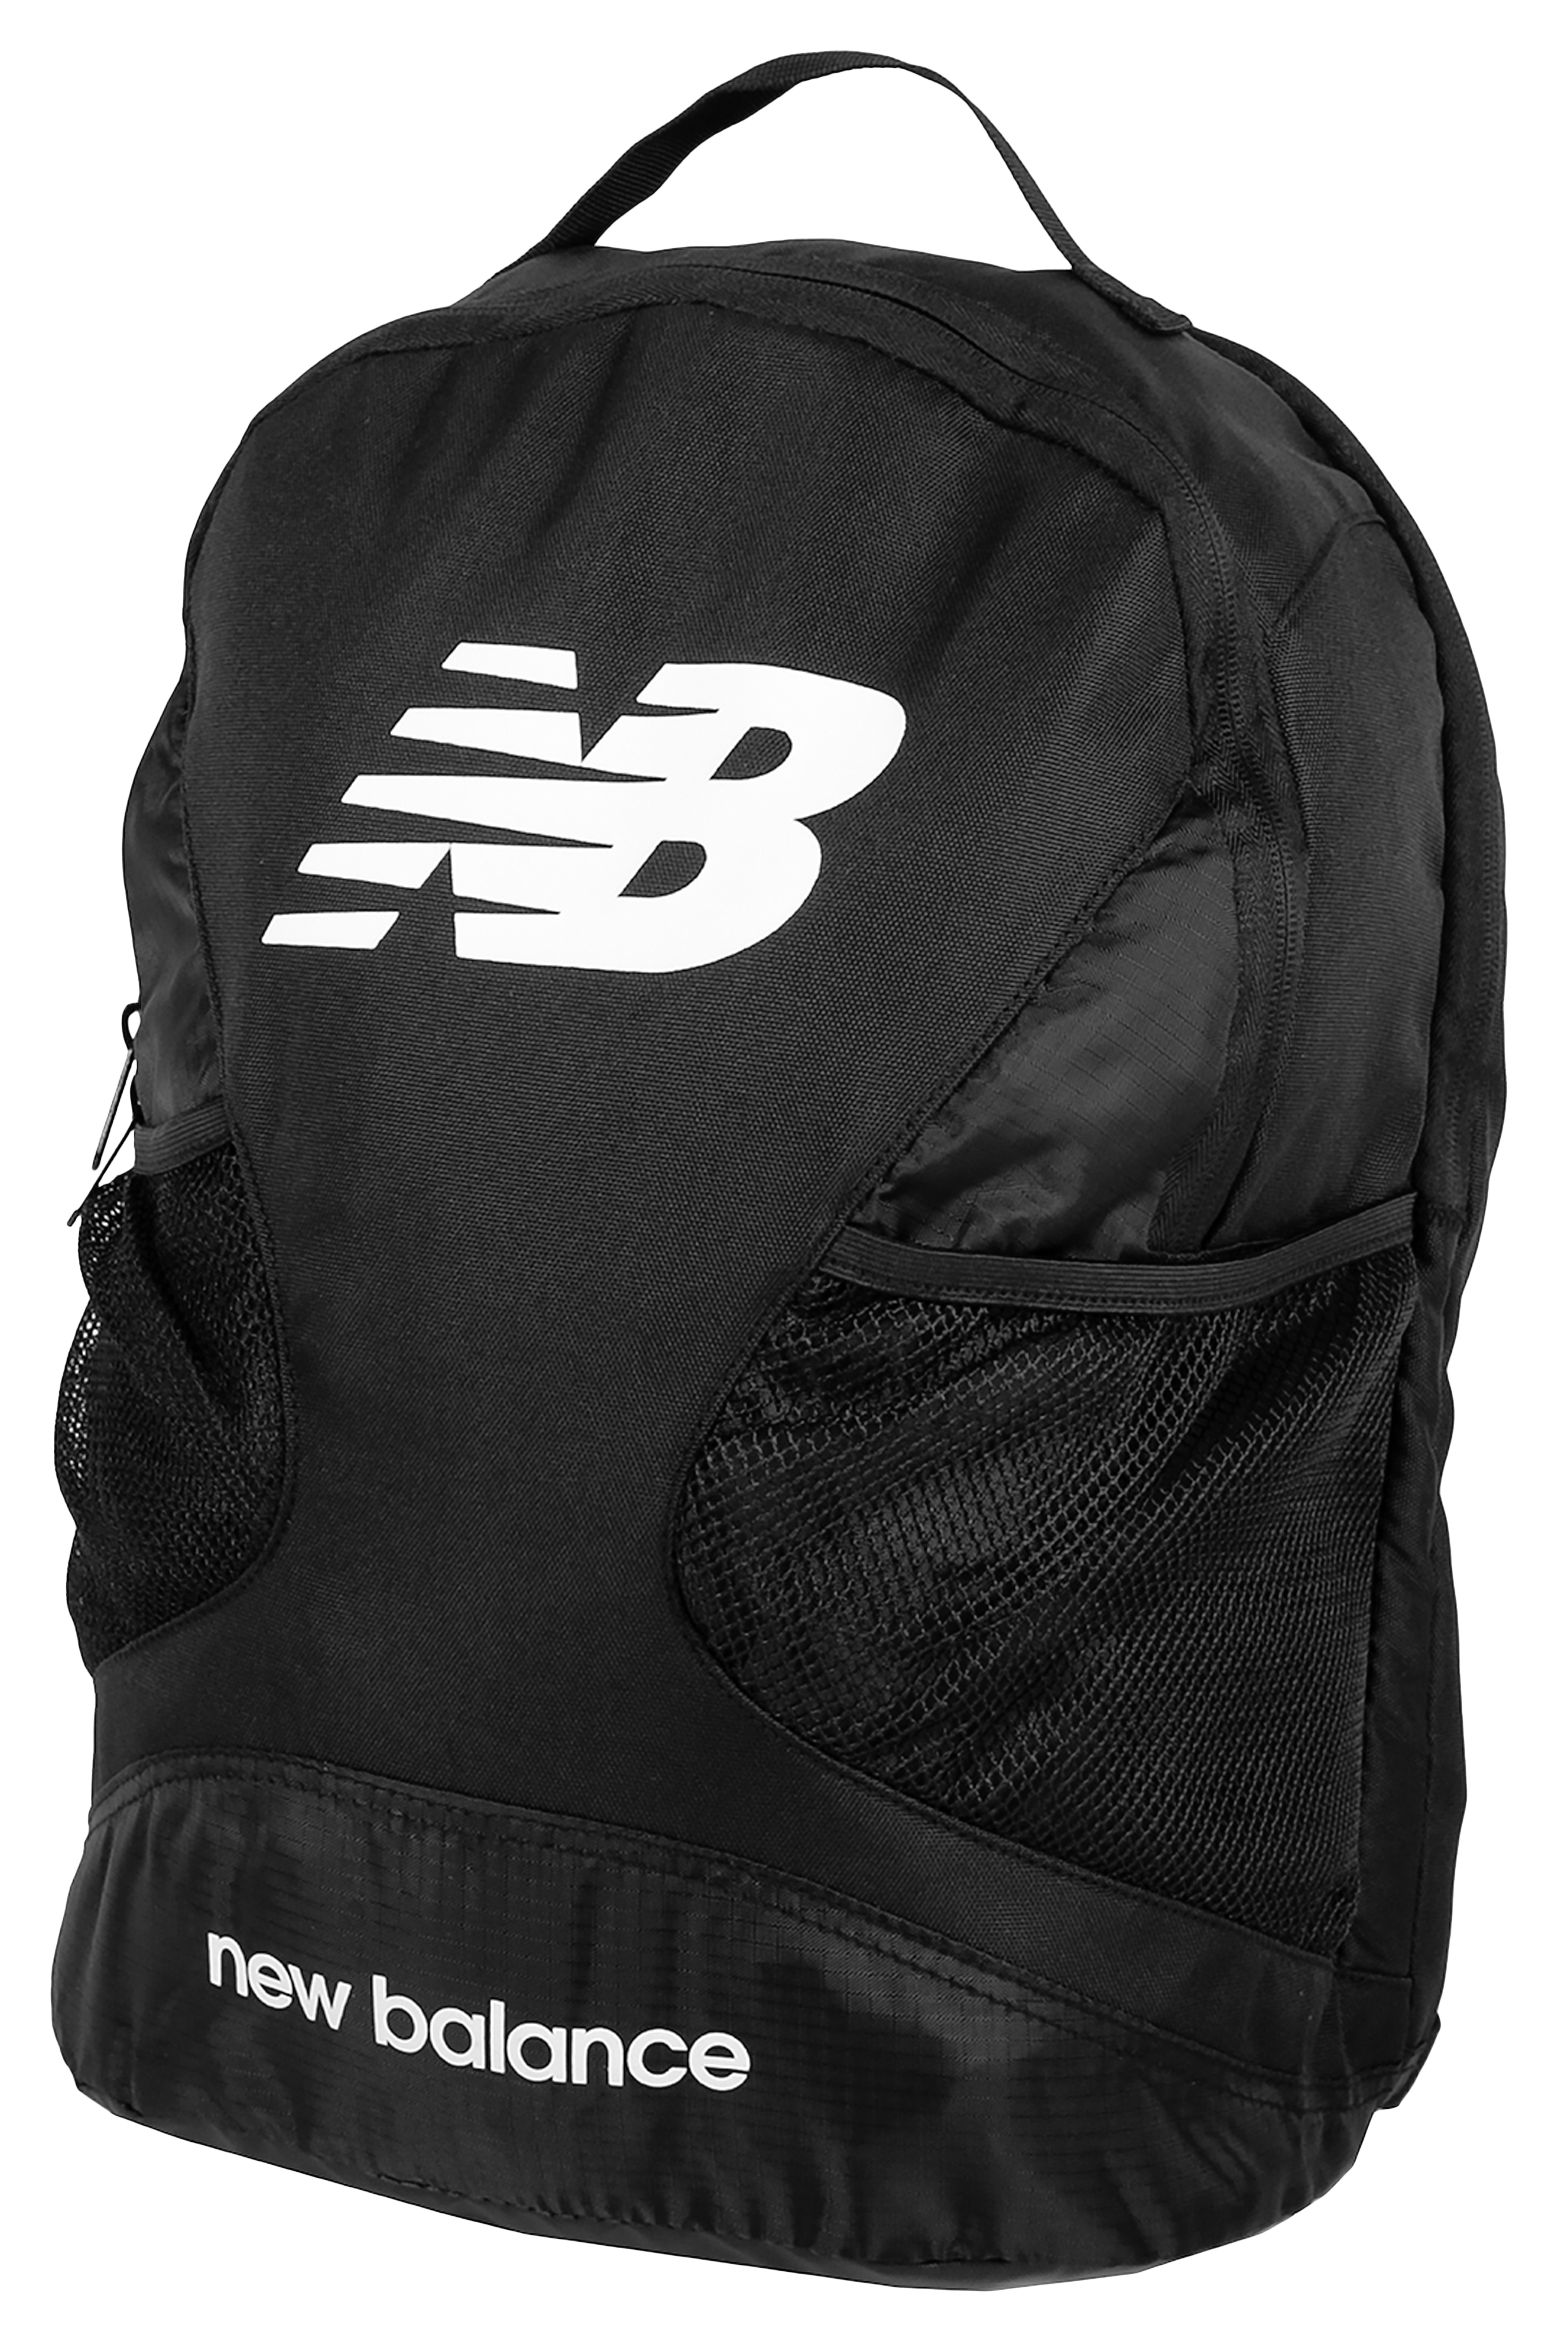 nb backpack